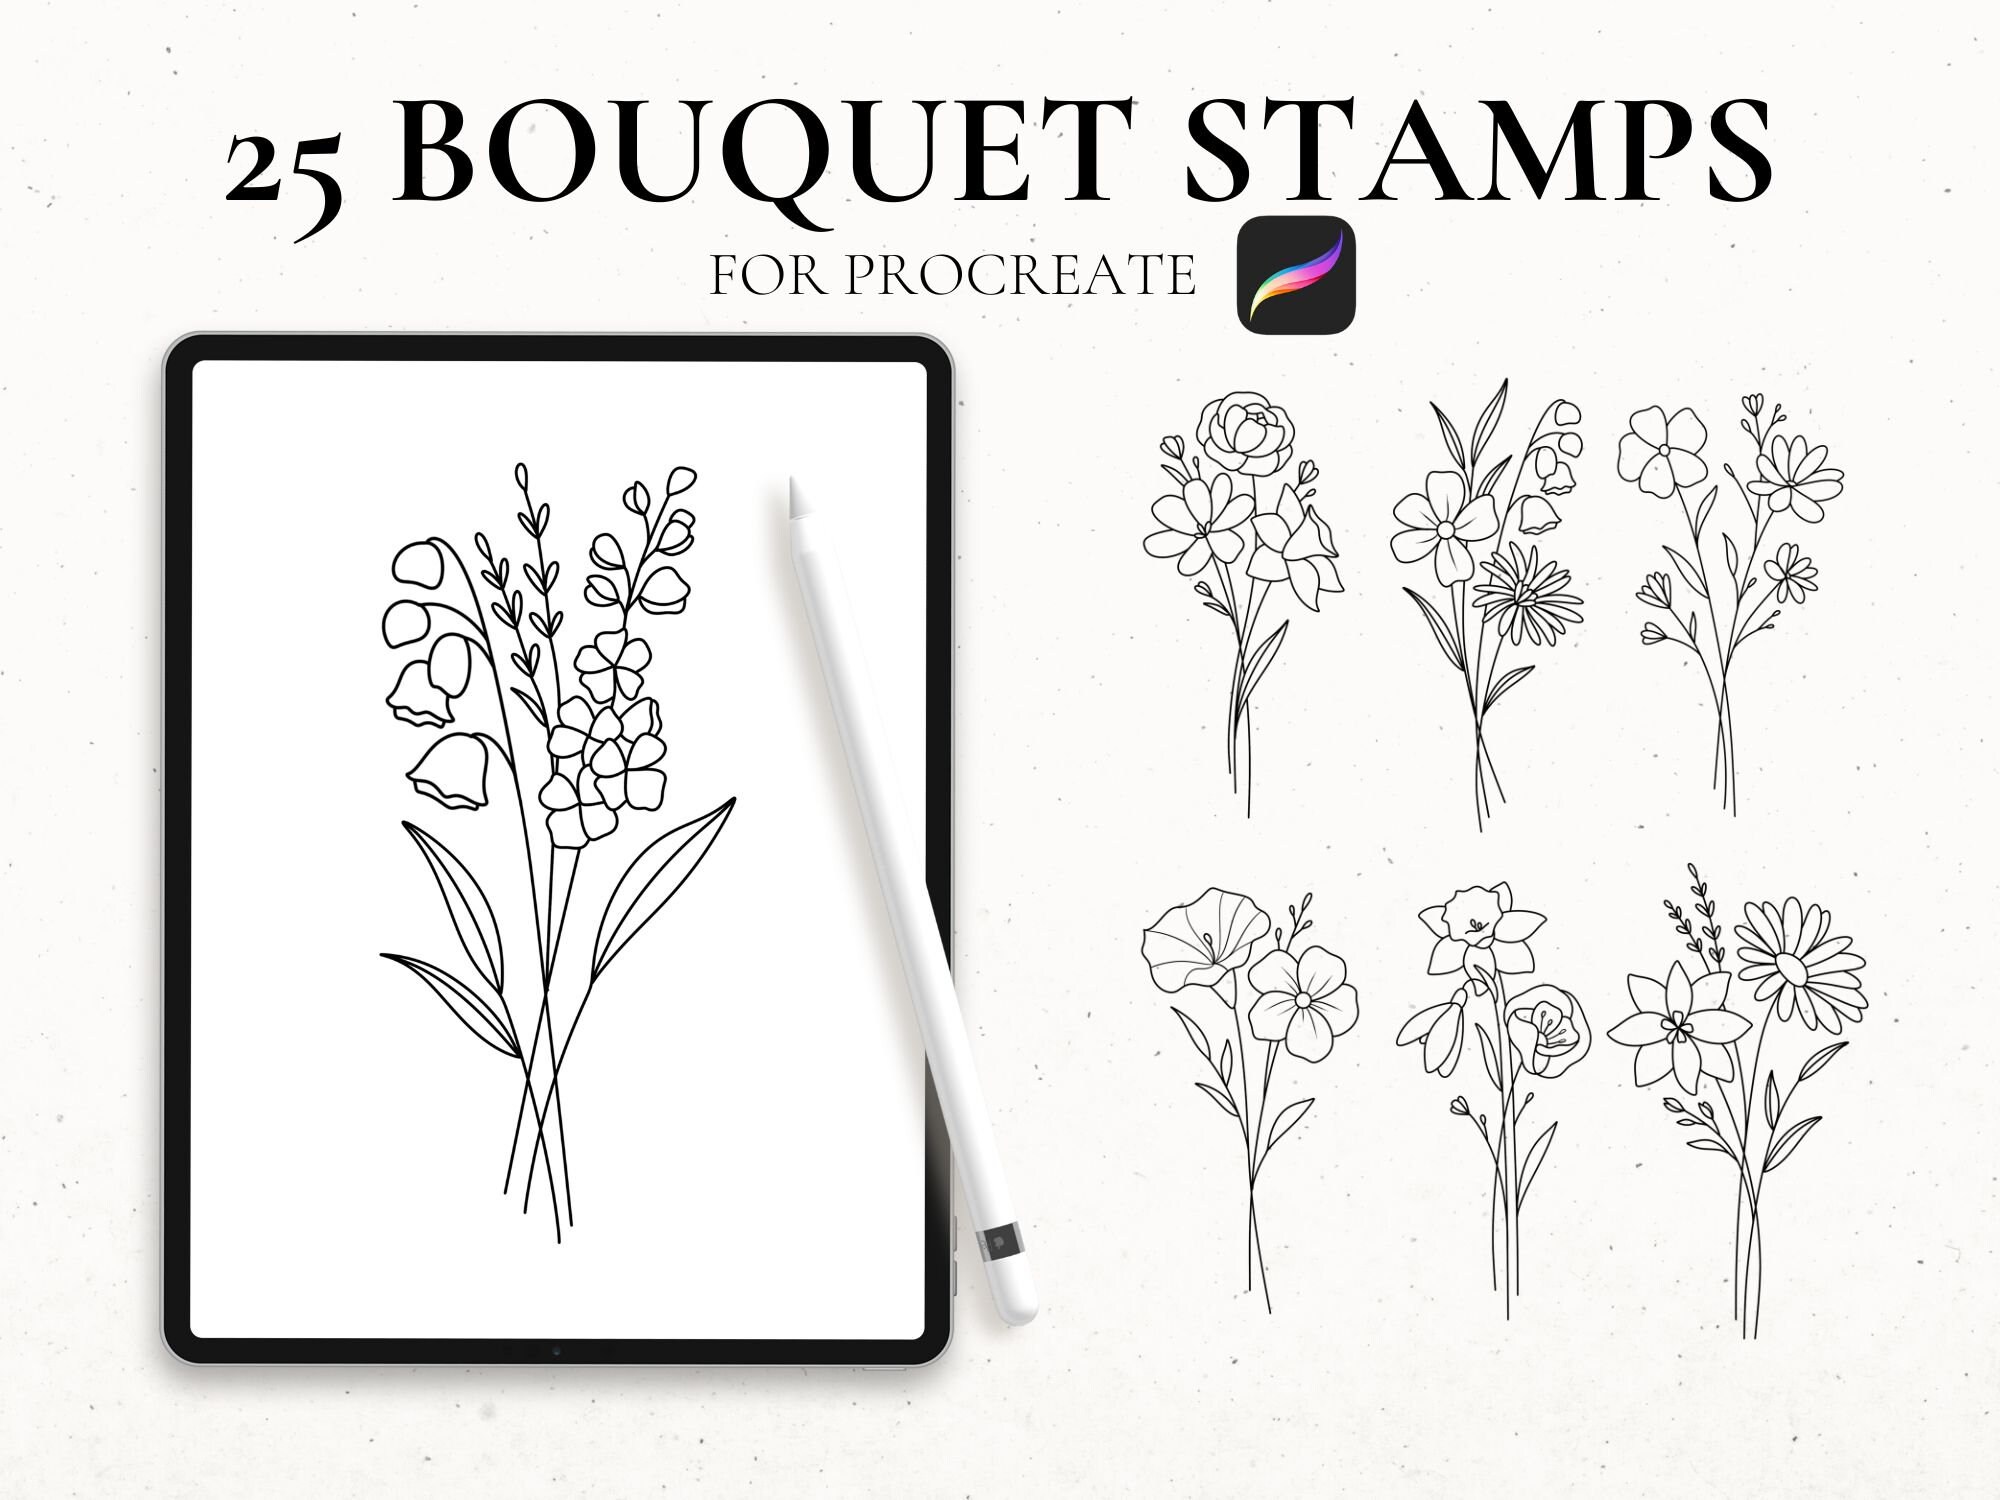 Ramo de flores Procreate Stamp Brush, Flower Stencil, Procreate